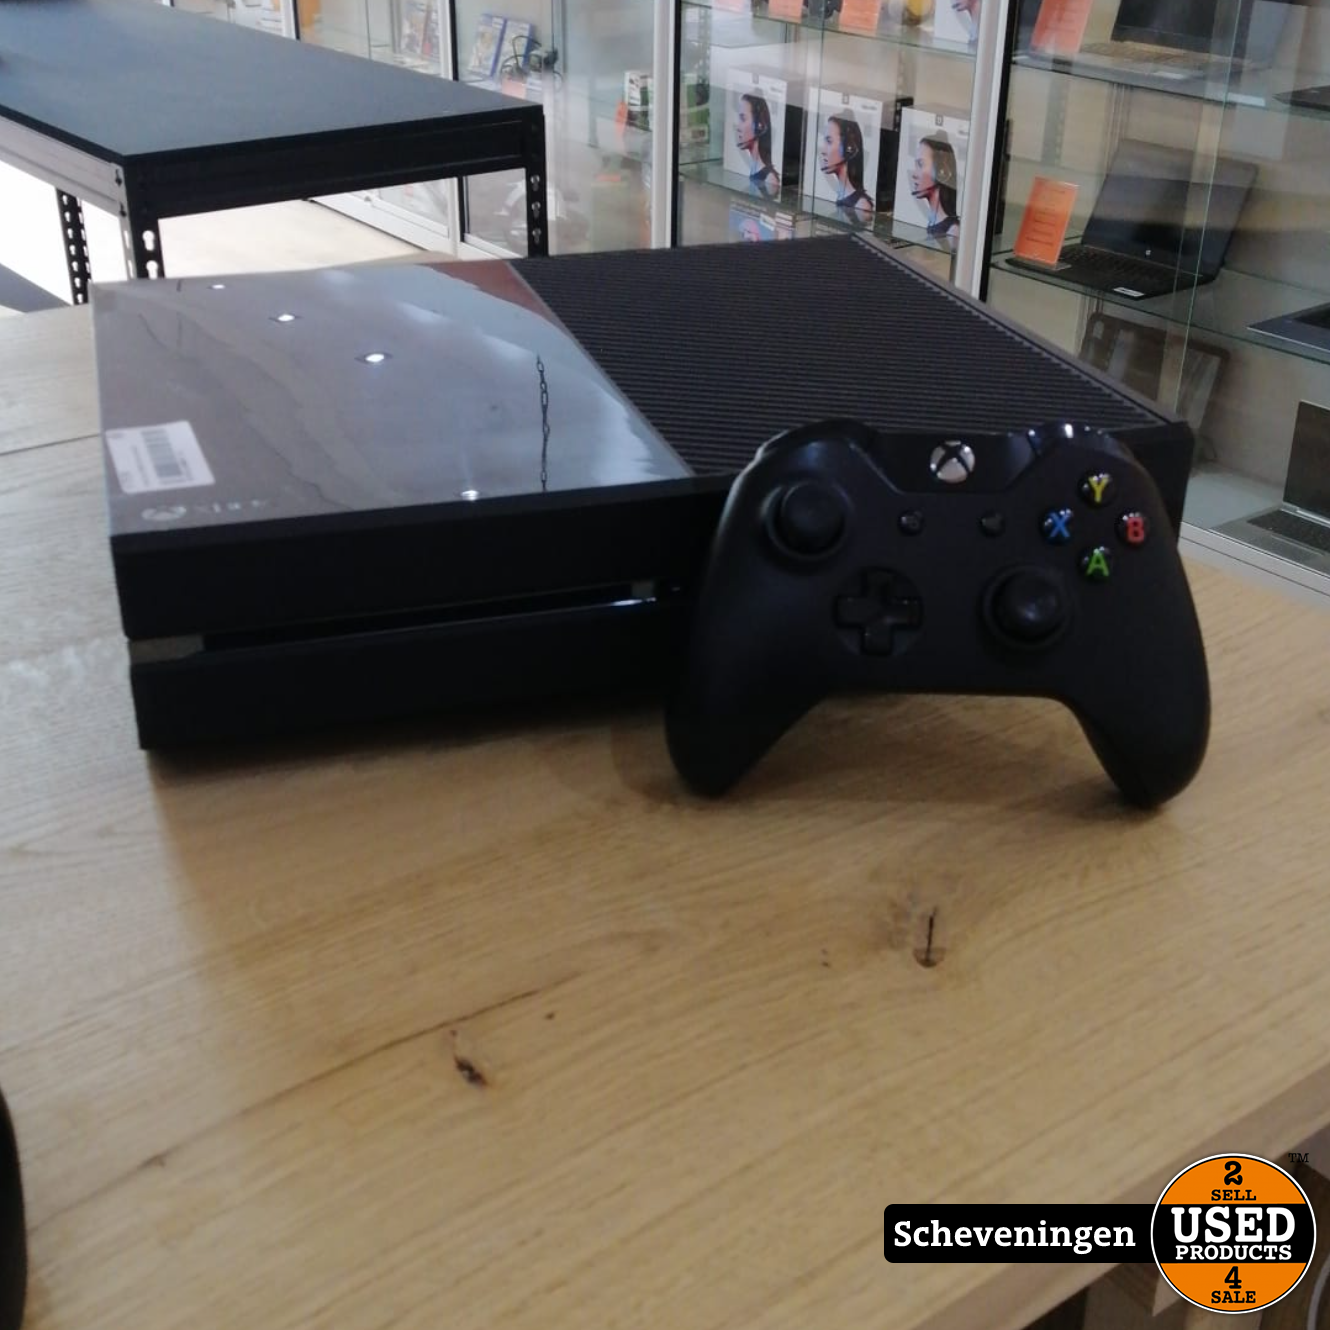 Cilia Relatie longontsteking Xbox One 500GB met controller - Used Products Scheveningen